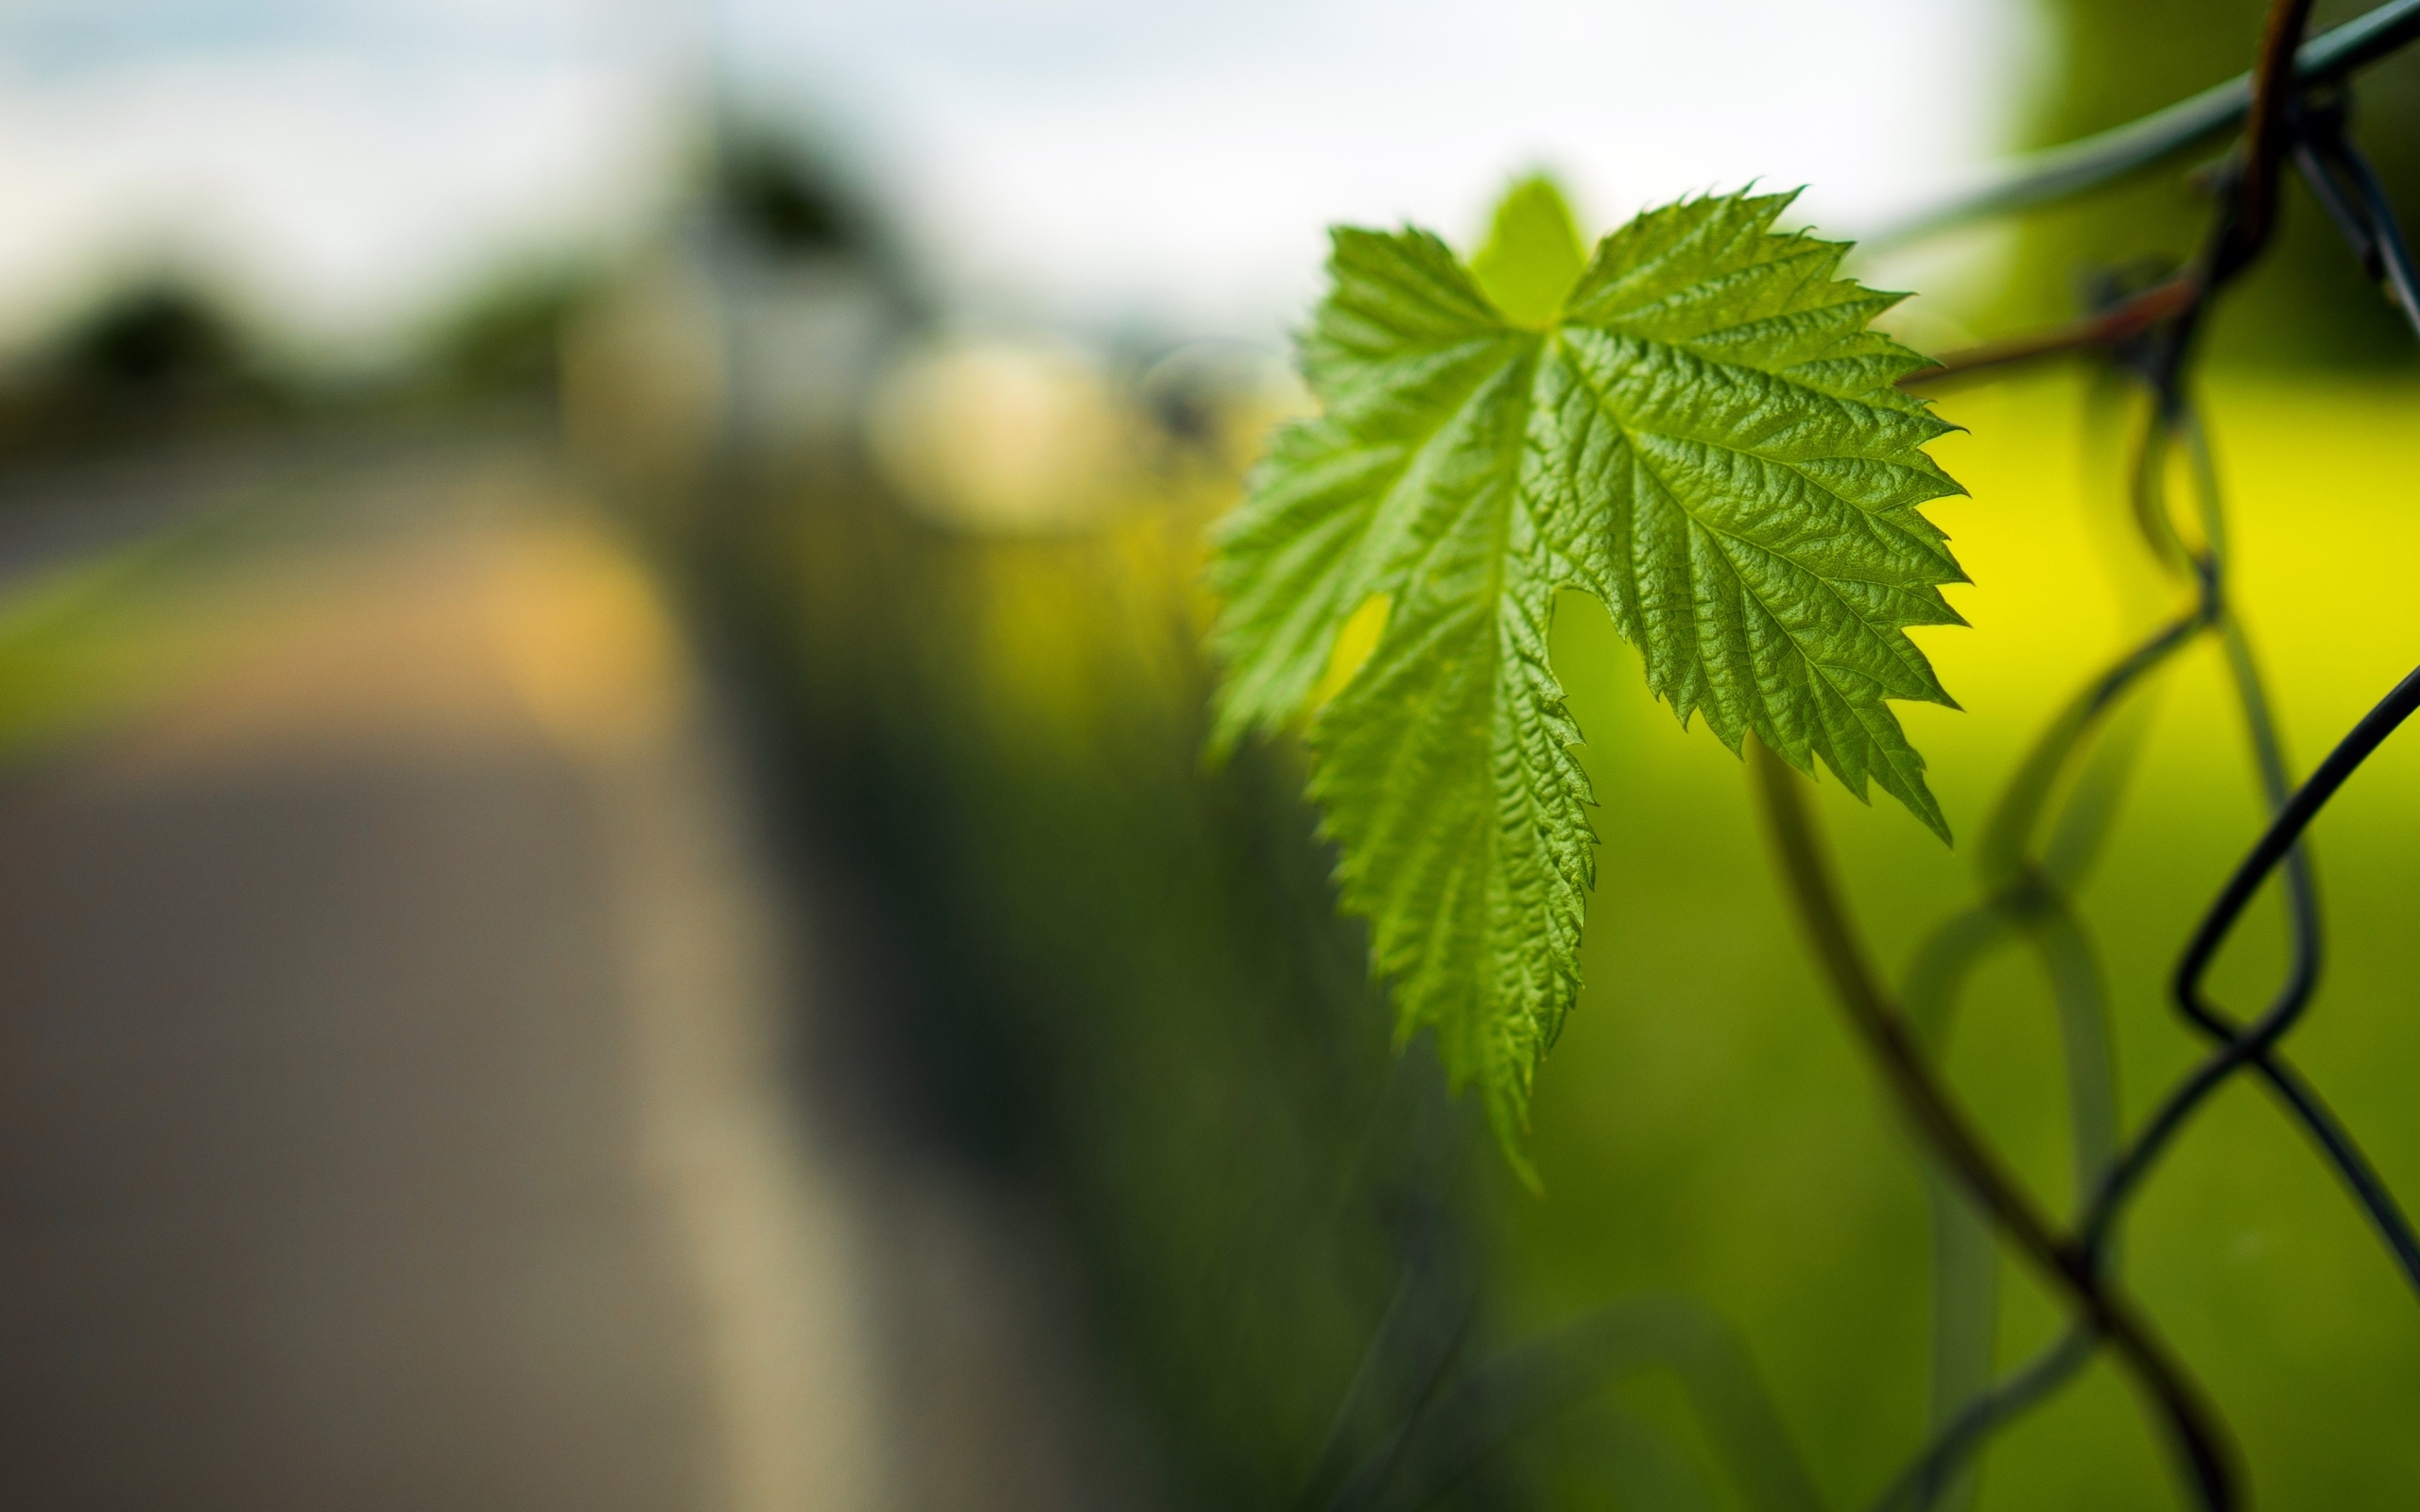 Зеленый лист растения на заборе весной